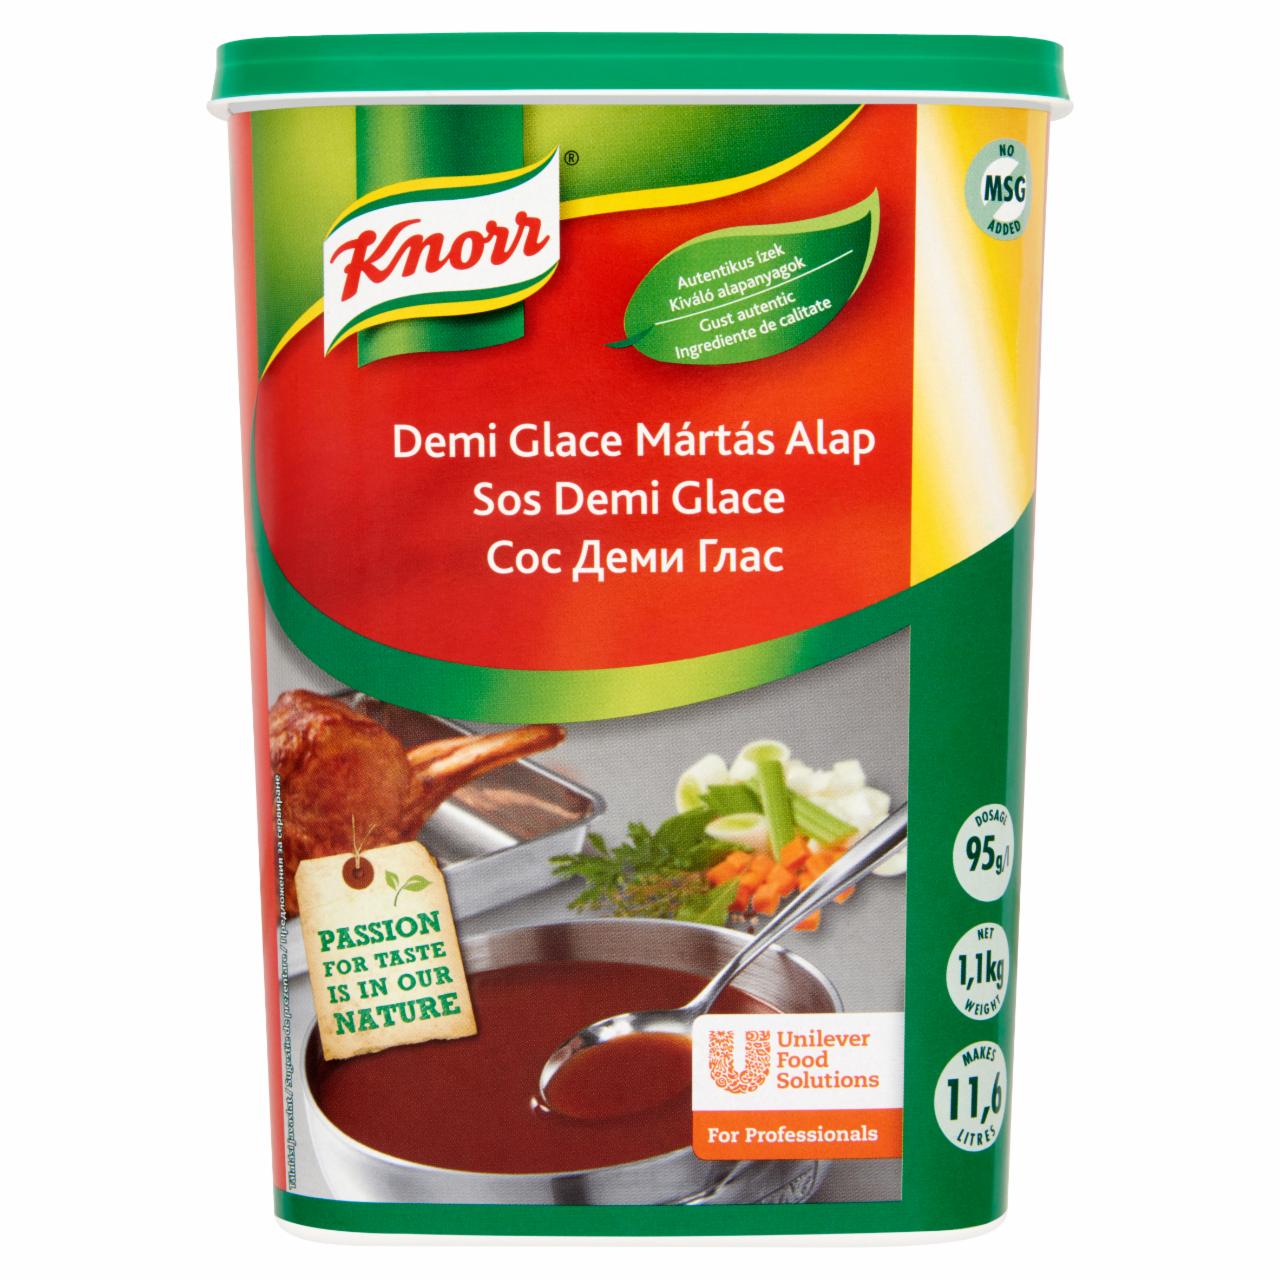 Képek - Knorr Demi Glace mártás alap 1,1 kg